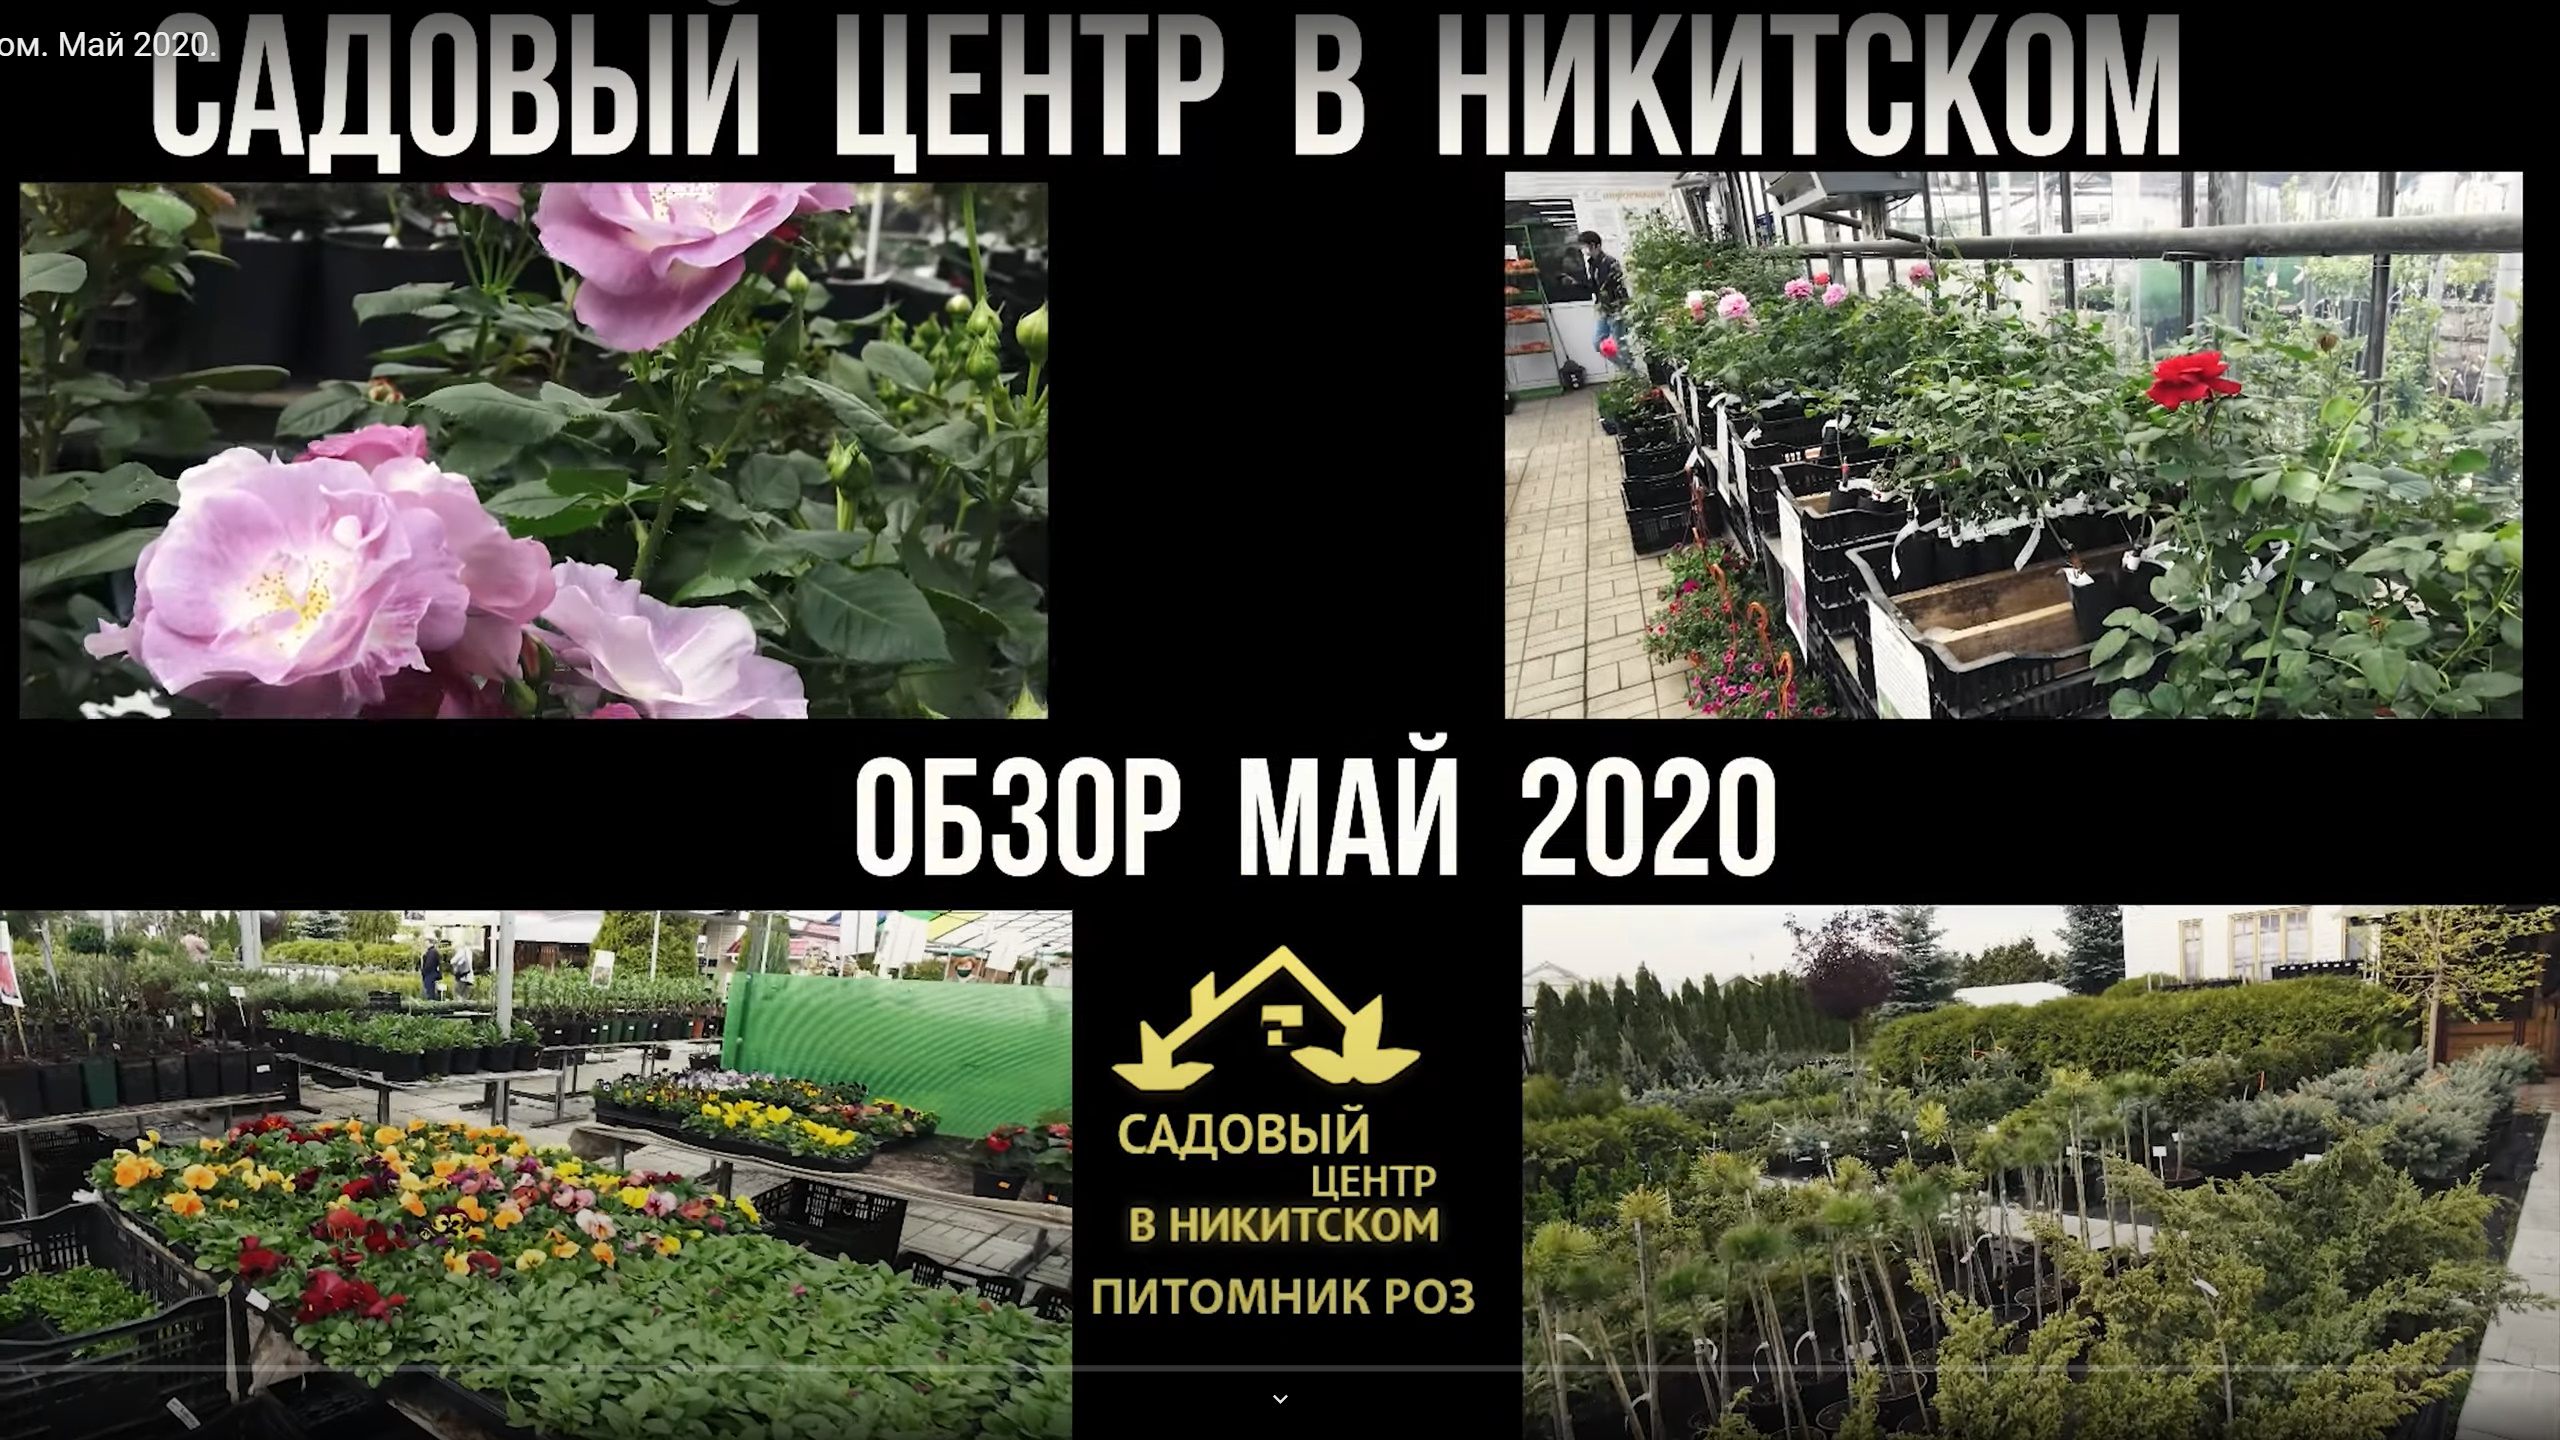 Садовый центр в Никитском Май 2020